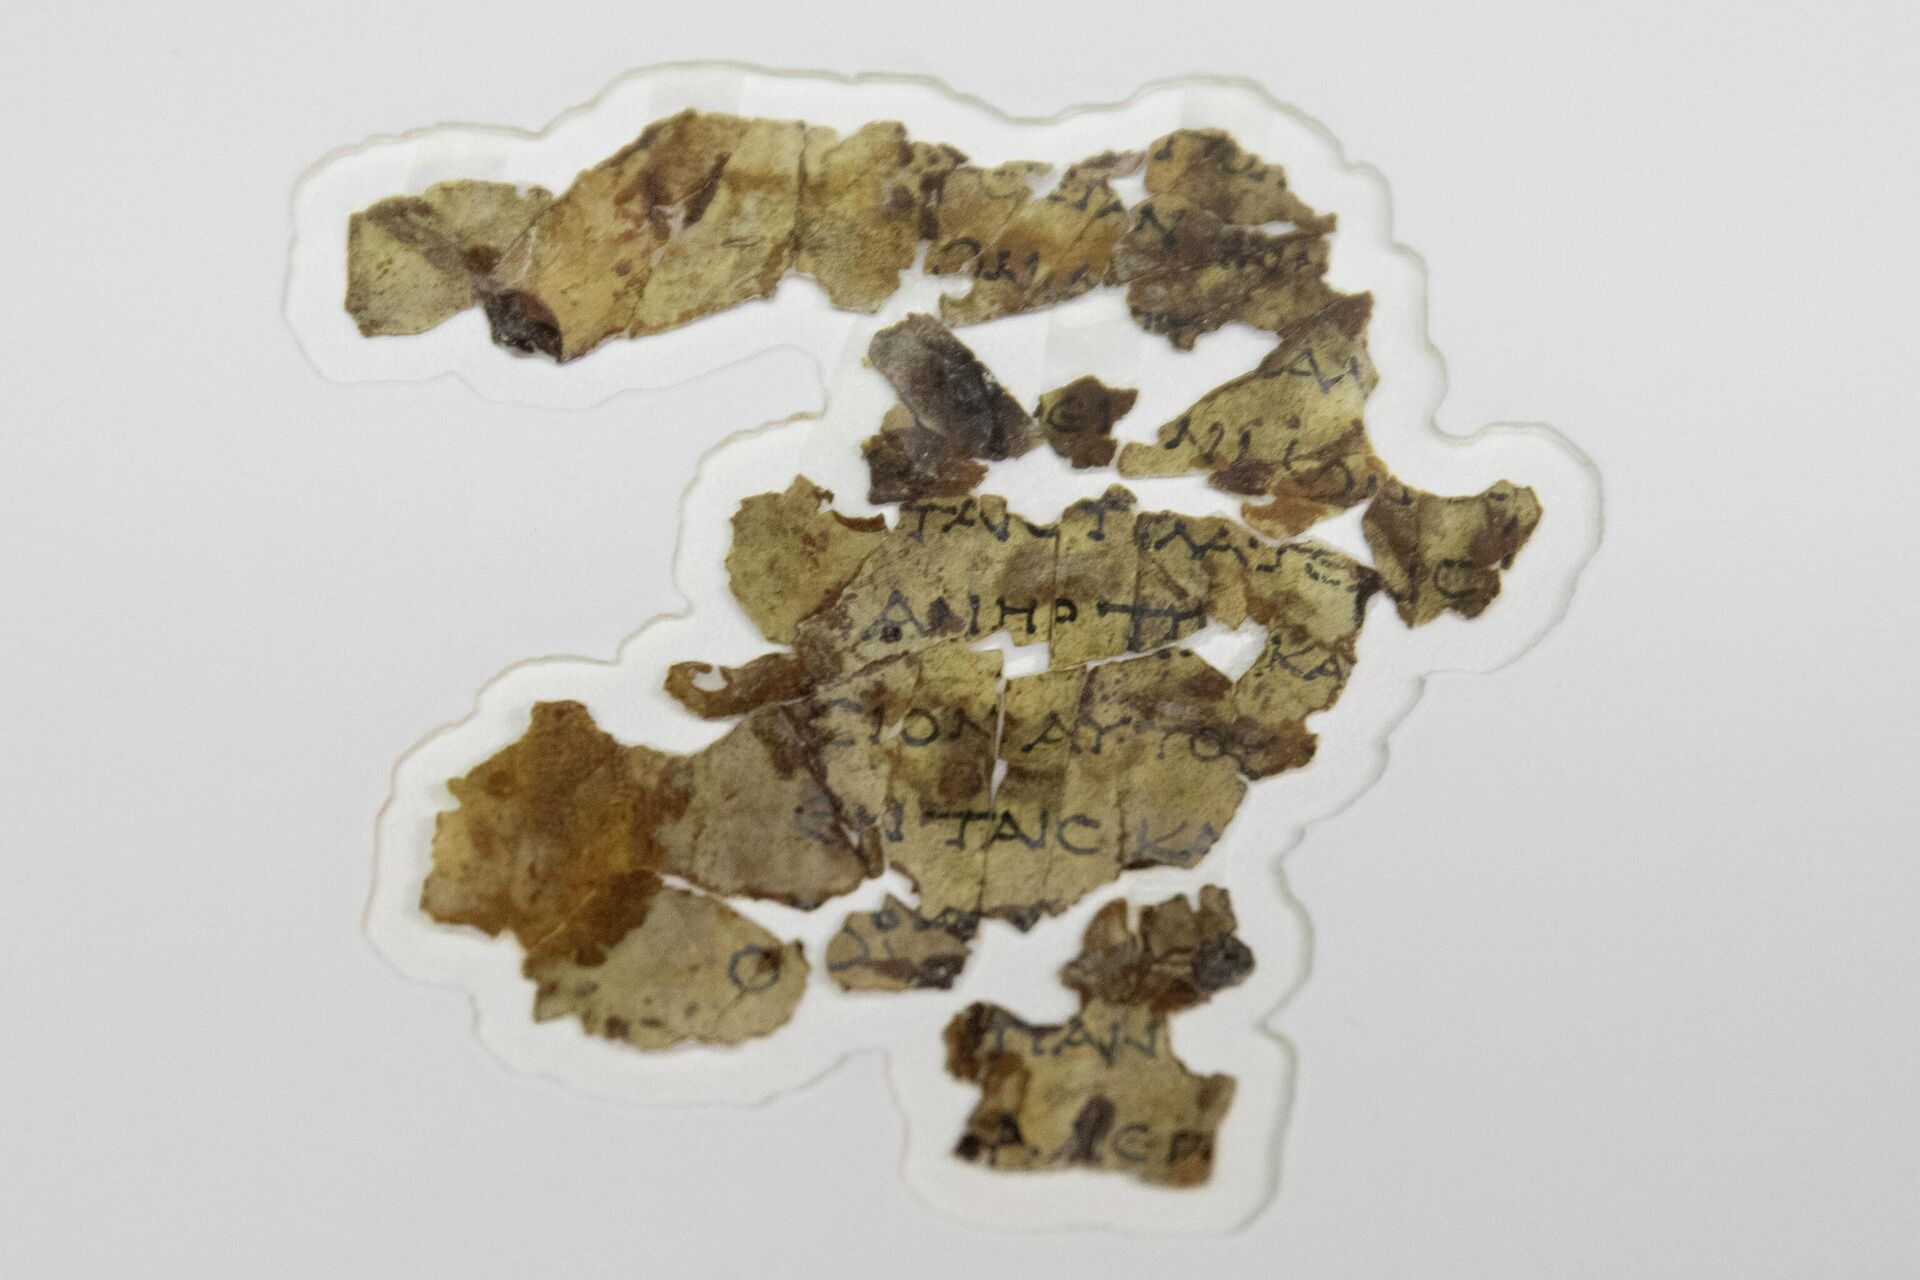 Fragmentos de los Manuscritos del Mar Muerto encontrados en Israel - Sputnik Mundo, 1920, 16.03.2021